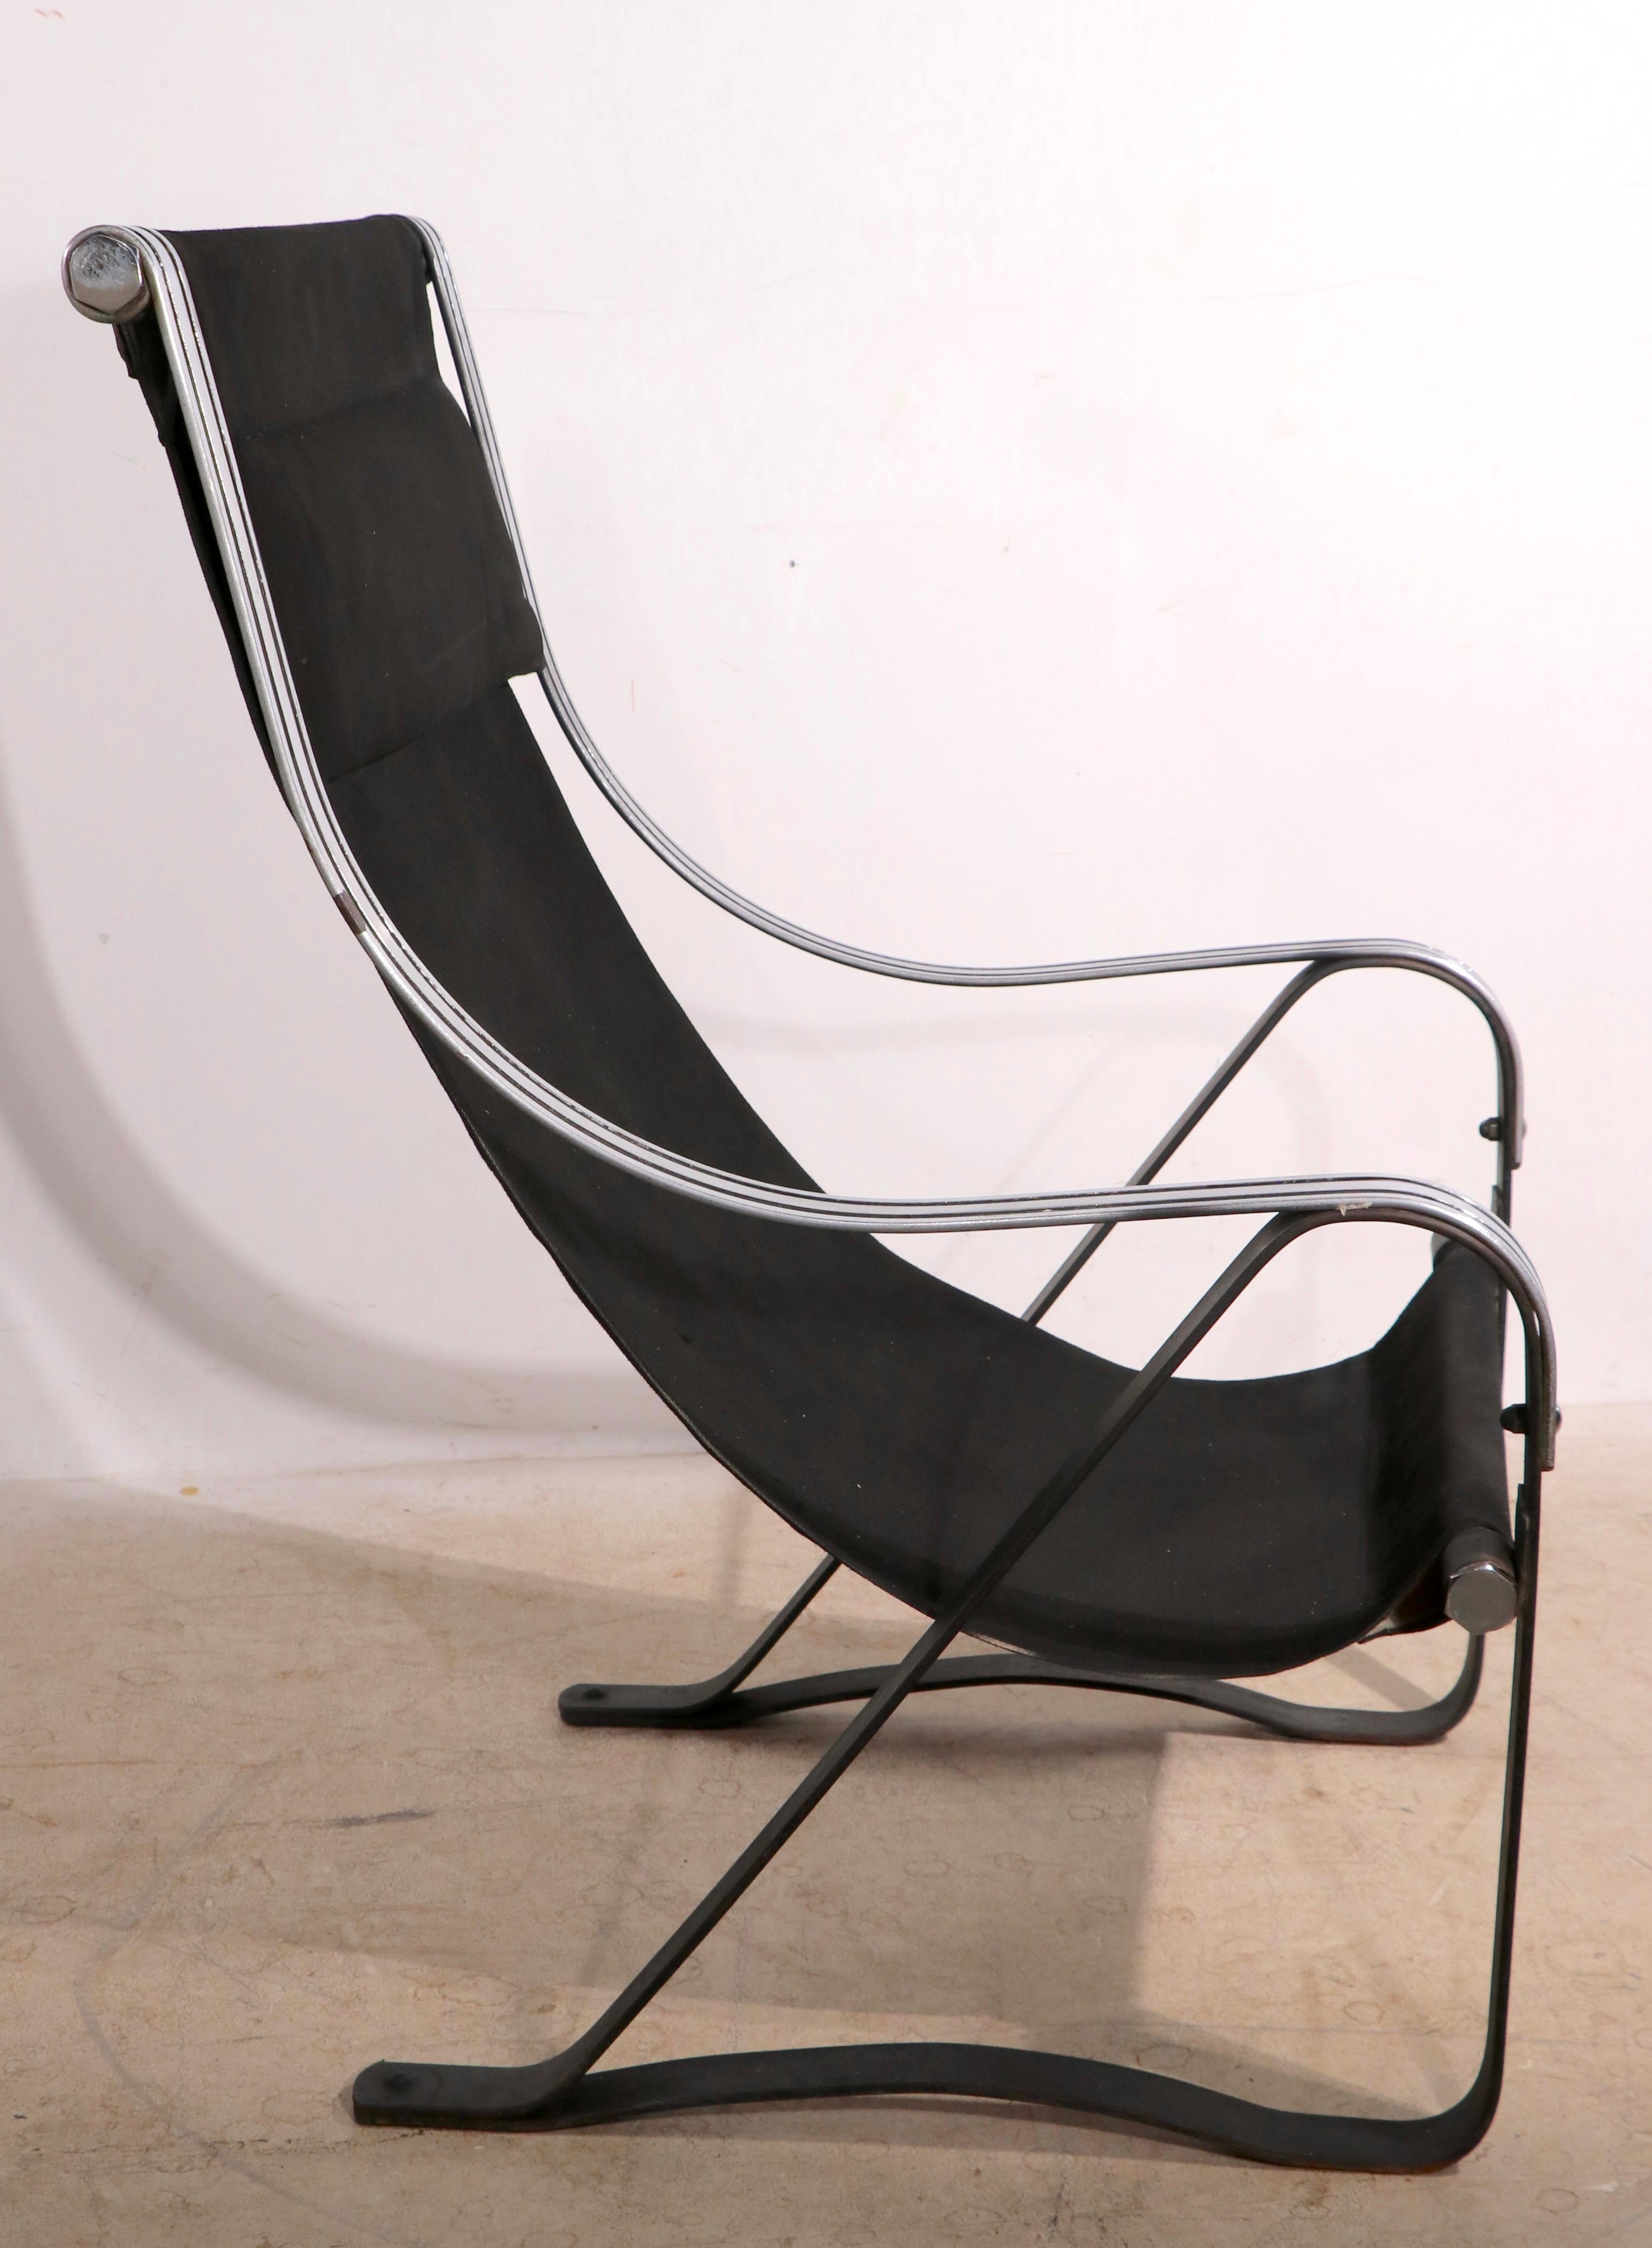 Ikonischer Art Deco, Machine Age Sling Seat Lounge Chair mit eleganten verchromten und schwarzen Armlehnen auf einem geschwärzten Stahlfederfuß. Der Stuhl ist in insgesamt sehr gutem Zustand, das Chrom ist hell und glänzend, es zeigt einen